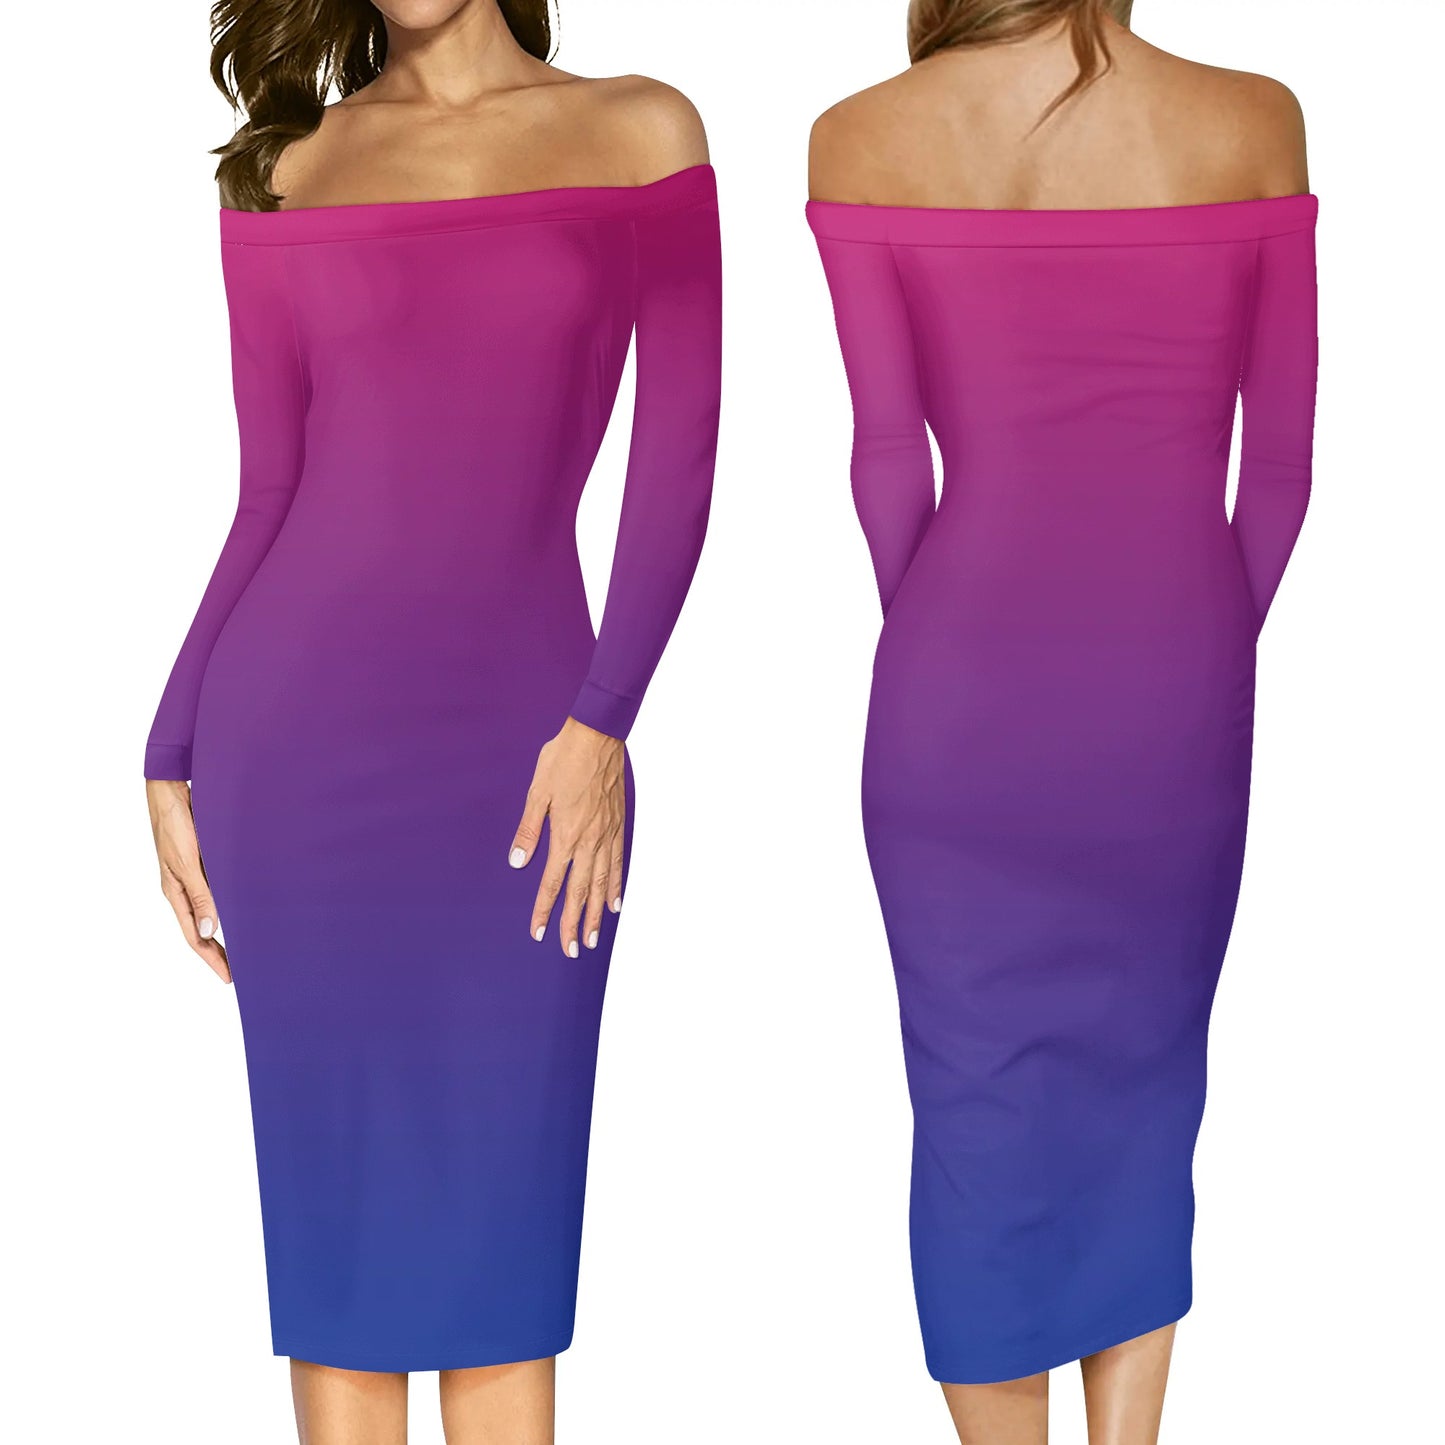 Bisexual Pride Off The Shoulder Long Sleeve Elegant Wrap Dress - Rose Gold Co. Shop